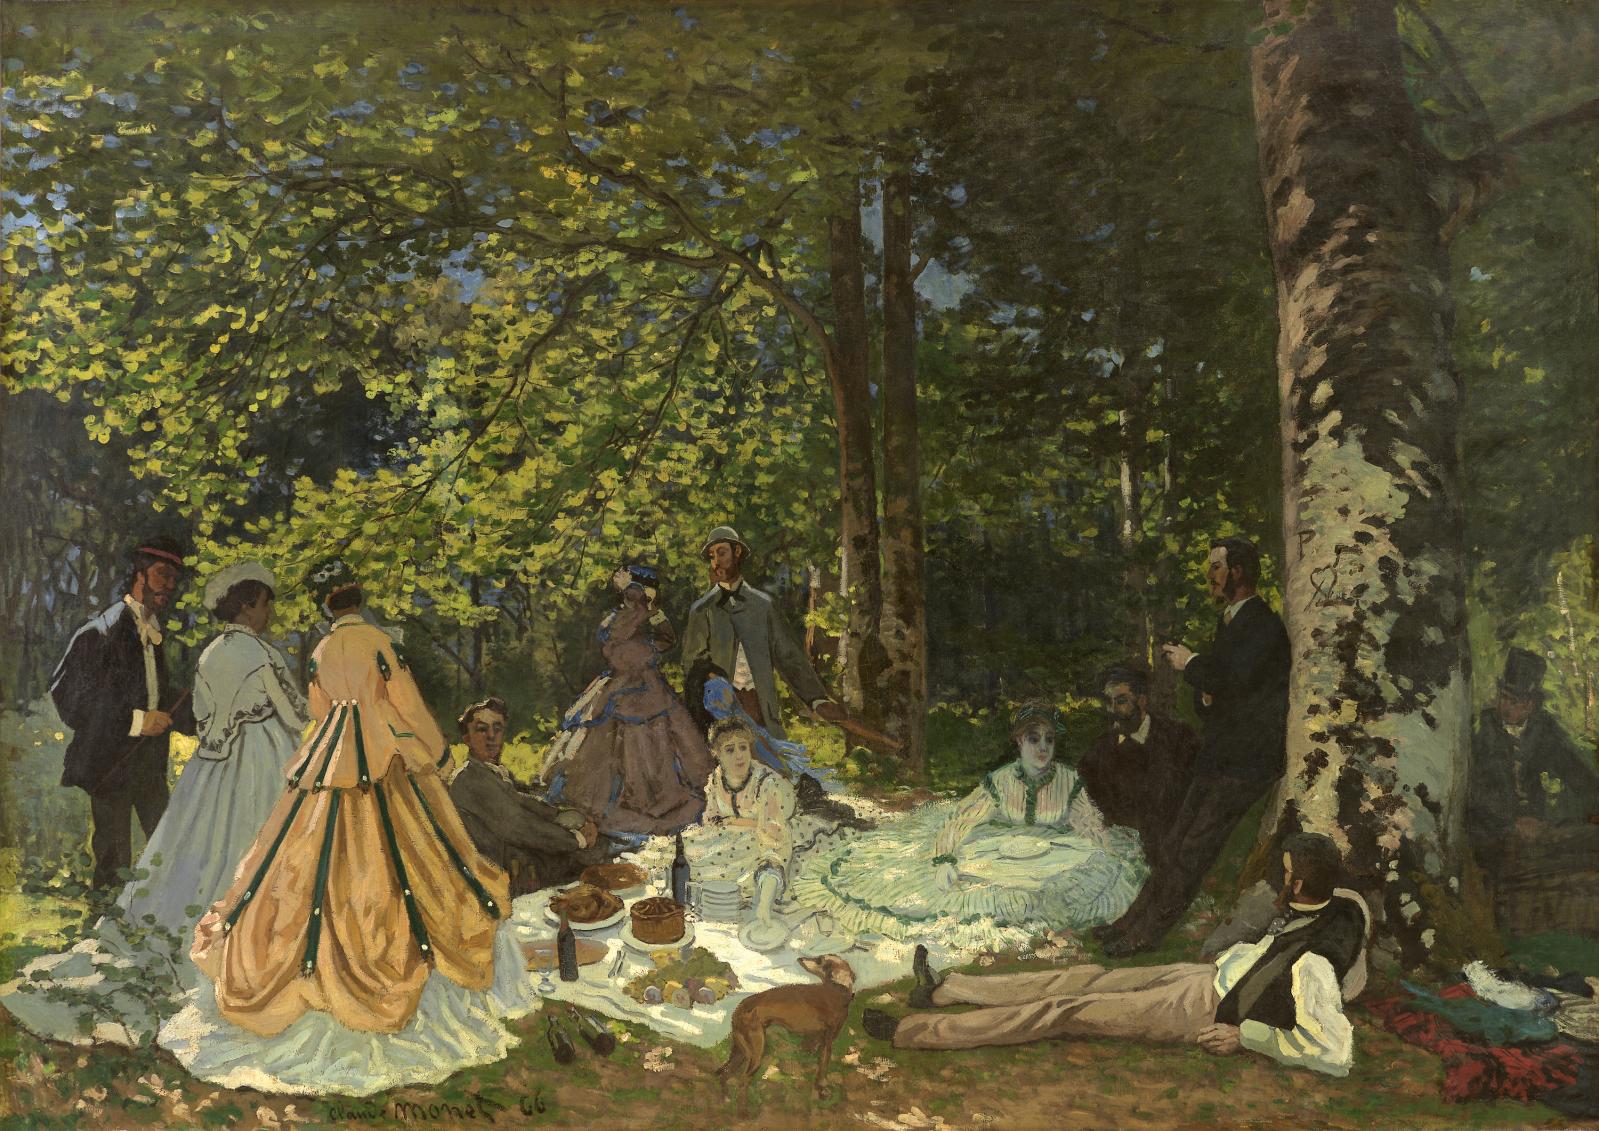 Claude Monet (1840-1926), Le Déjeuner sur l’herbe, 1866, huile sur toile, 82,5 x 101,5 cm, musée d’État des beaux-arts Pouchkine, Moscou. 